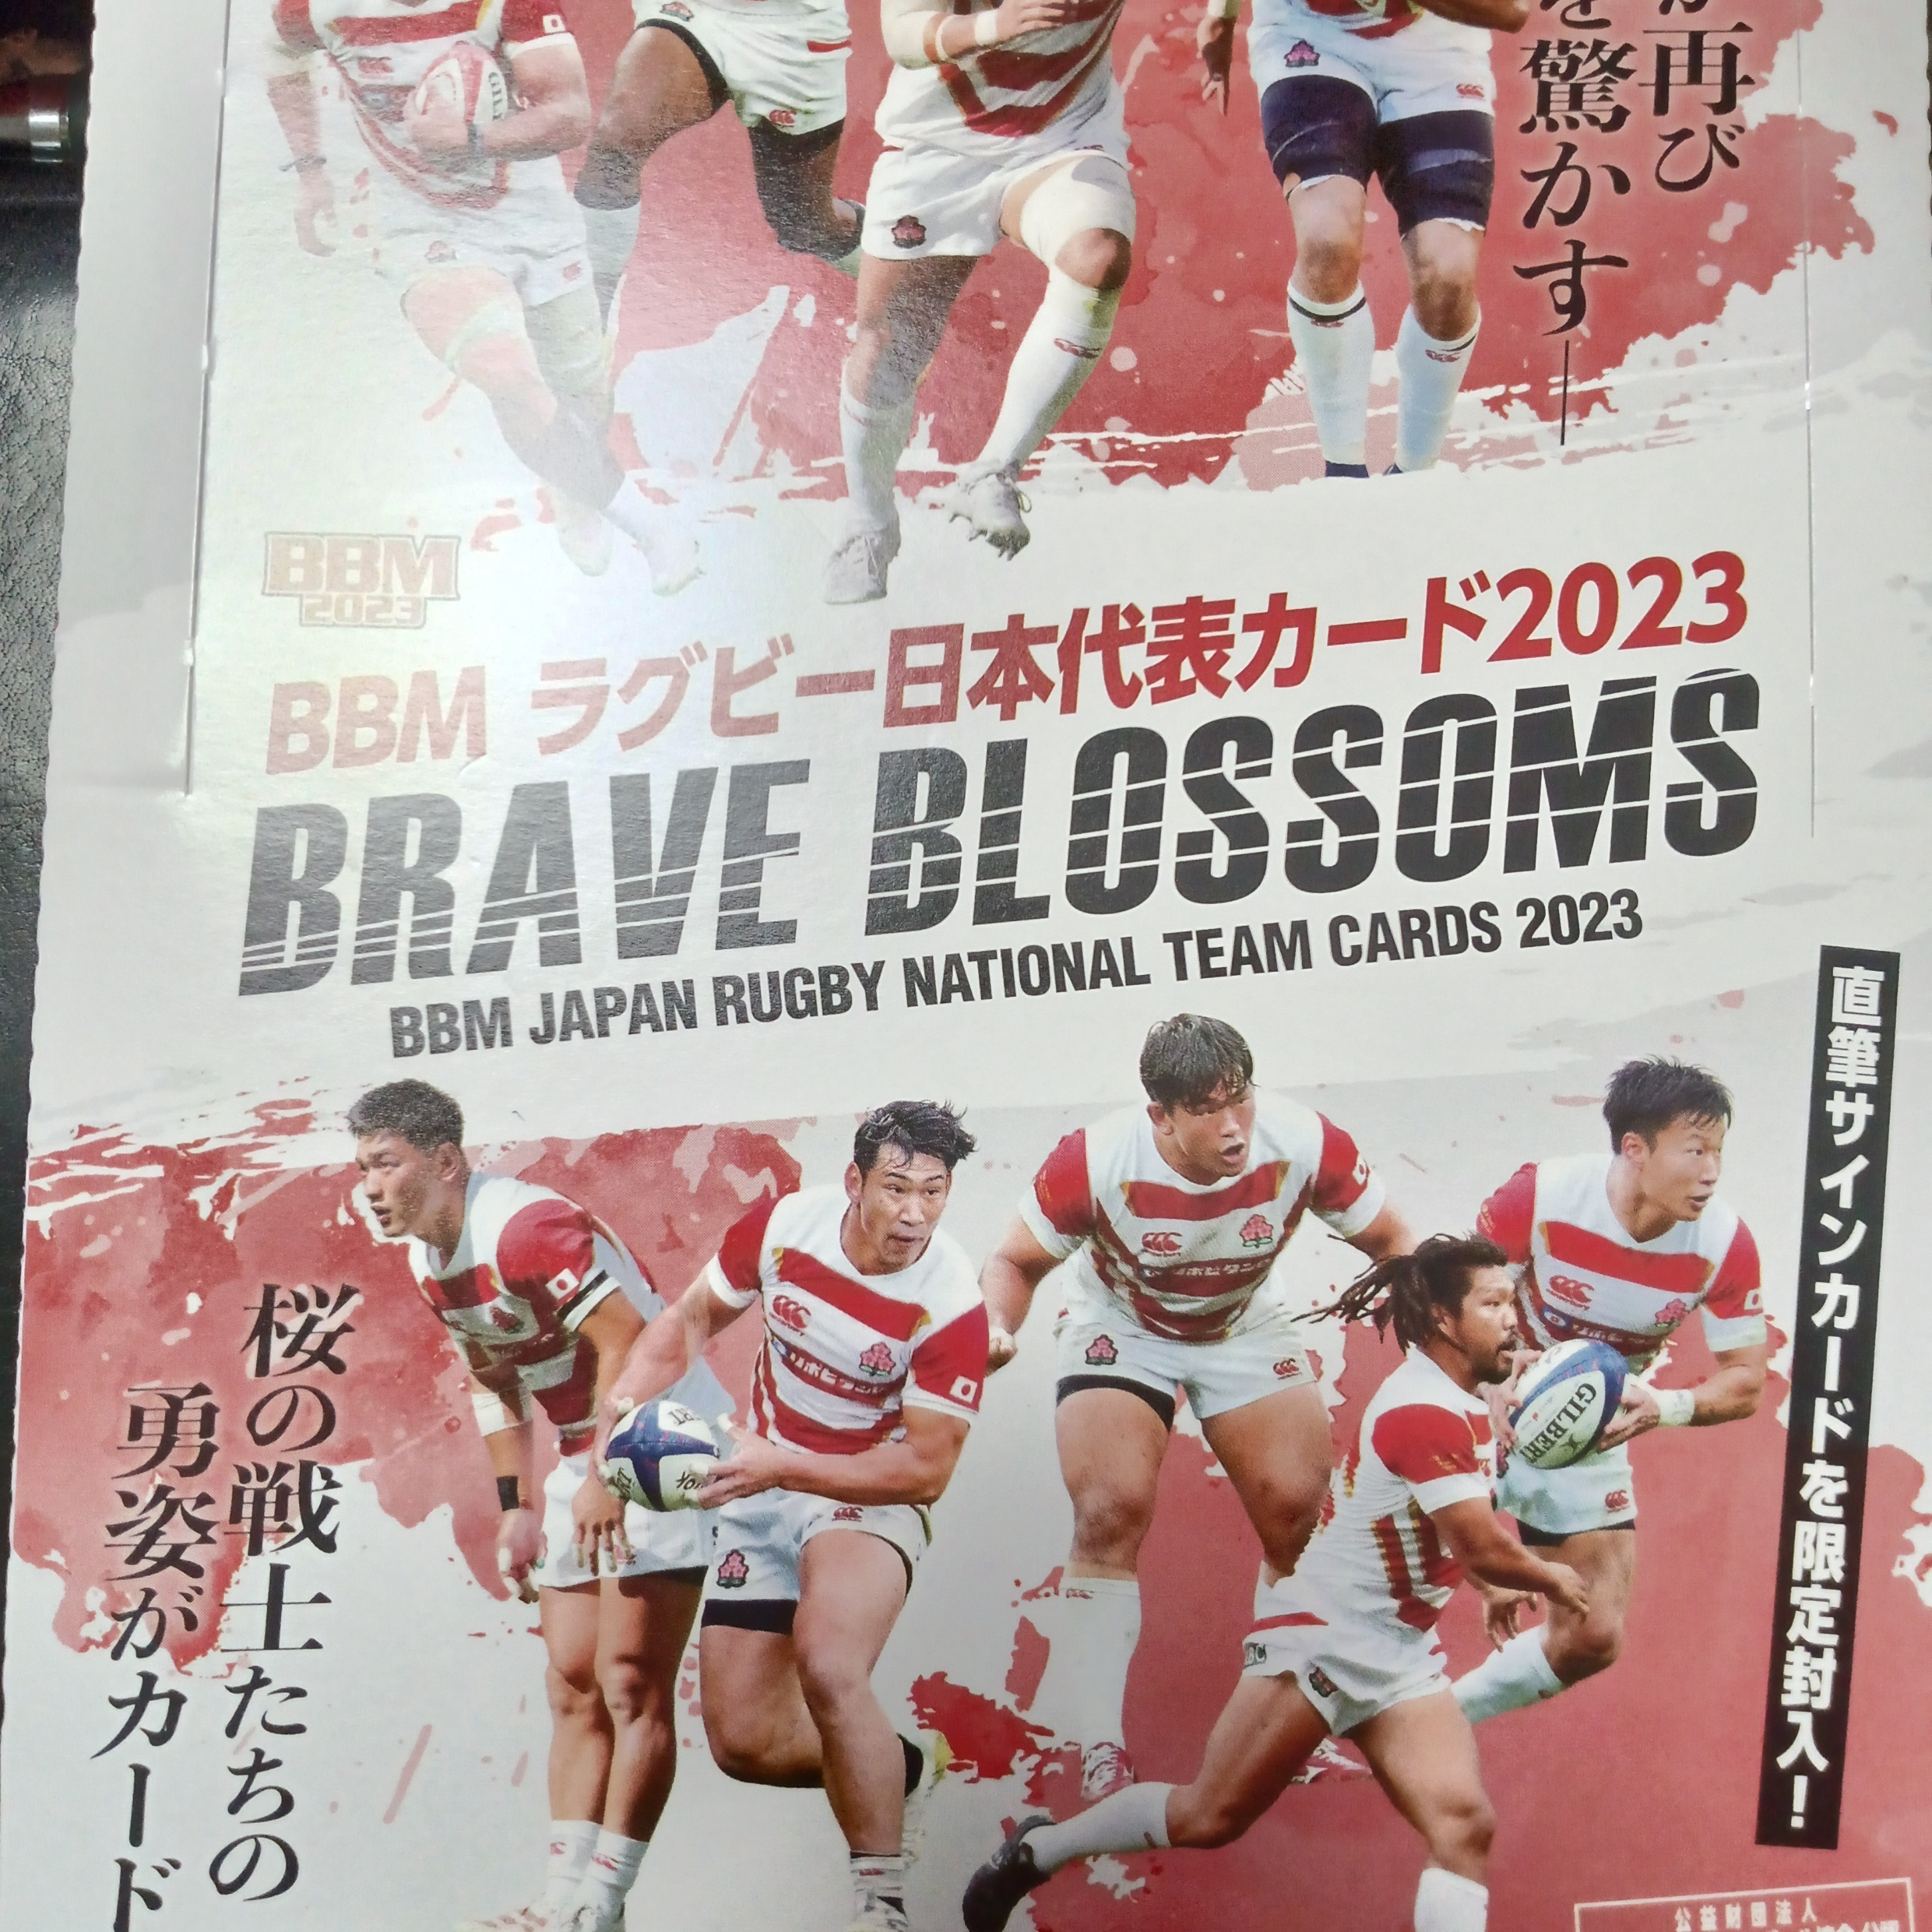 BBM ラグビー日本代表カード2023を開封しました。